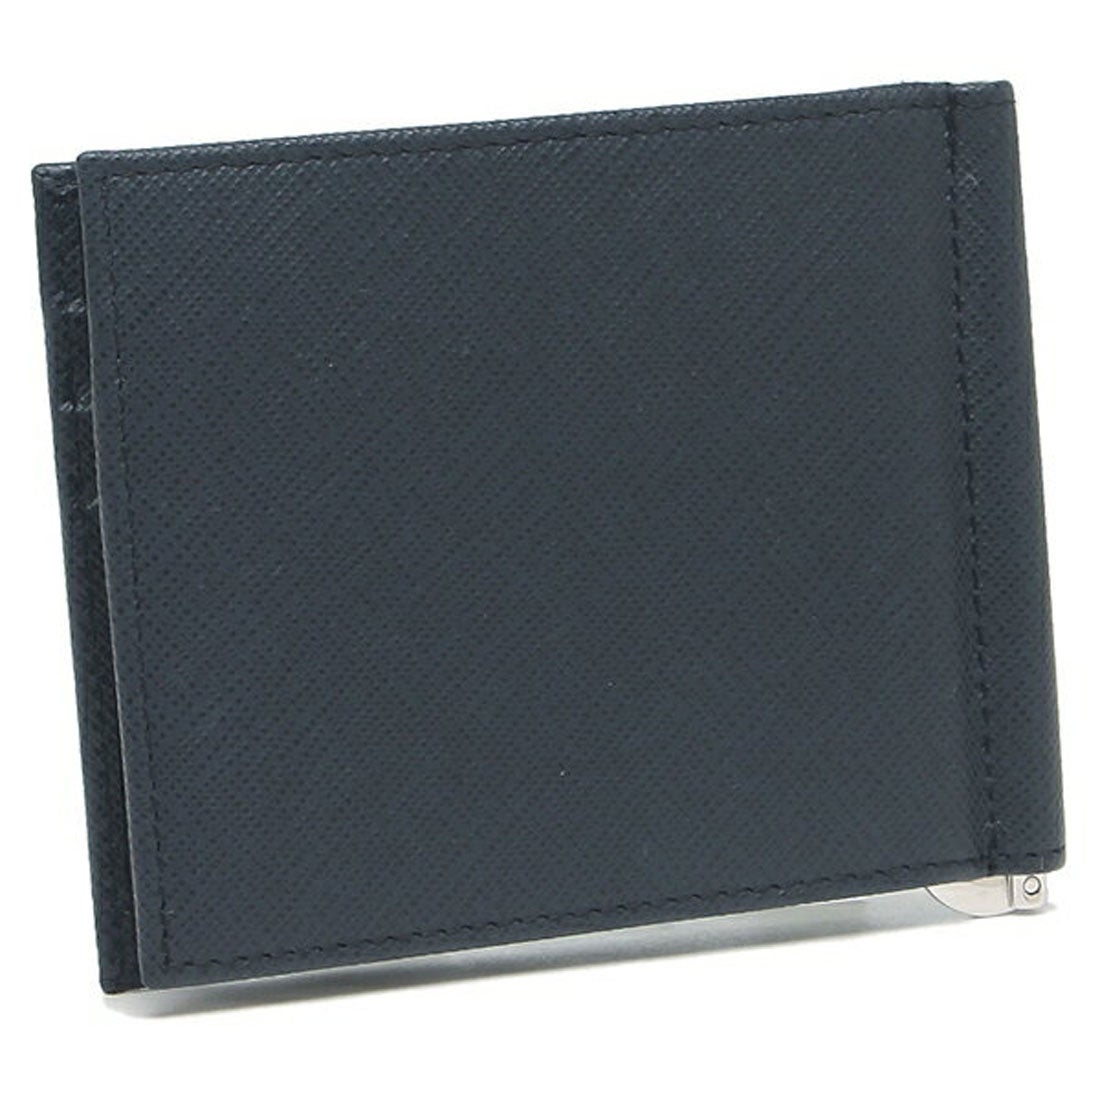 プラダ PRADA 財布 メンズ 二つ折り財布 サフィアーノ マネークリップ カードケース トライアングルロゴ PRADA 2MN077 QHH  F0216 ネイビー 小銭入れなし 一粒万倍日 （ネイビー）